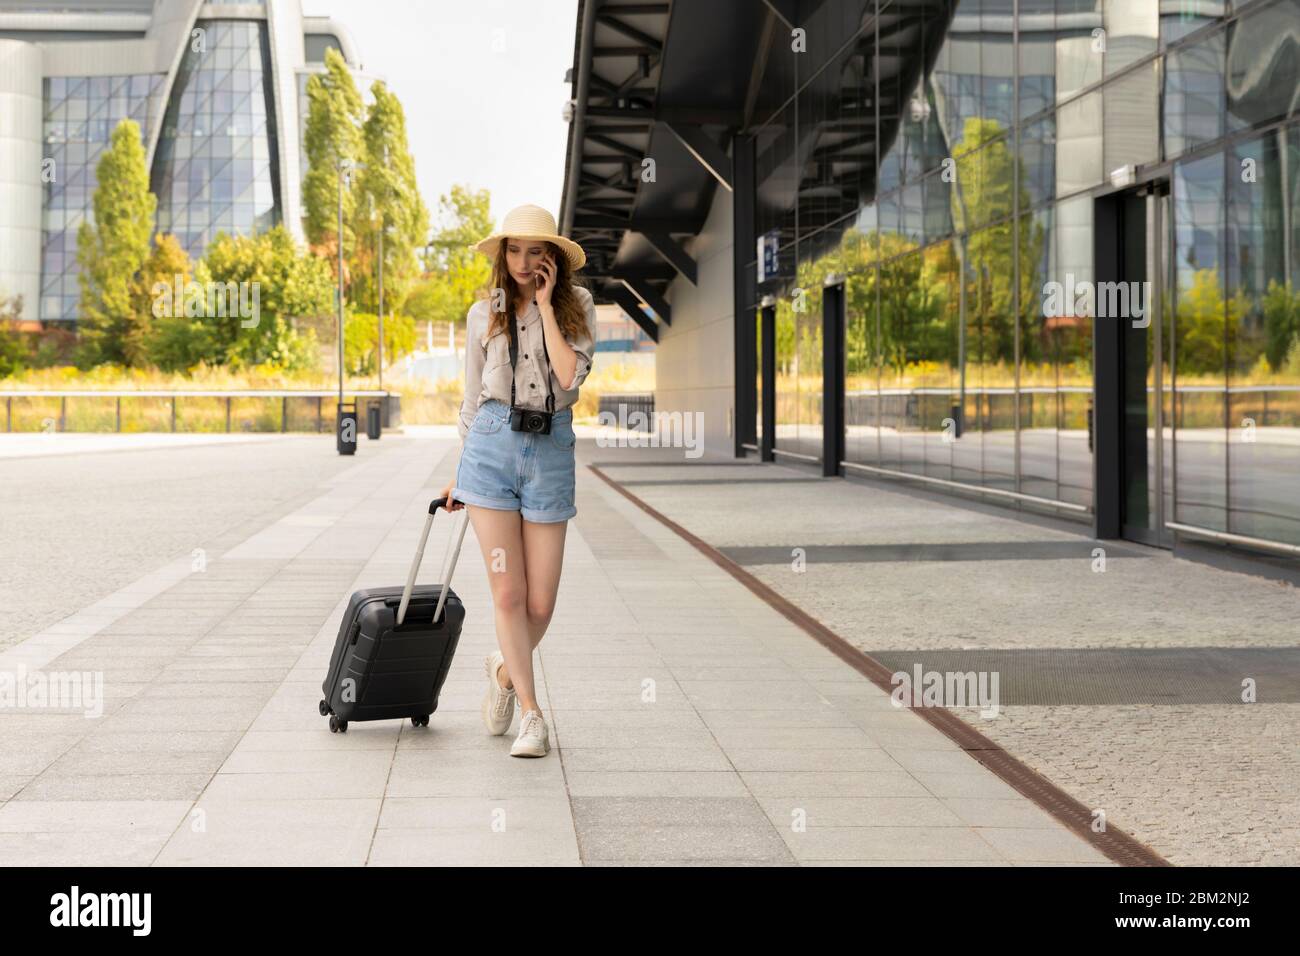 Immagine di giovane eccitato bella donna in posa turistica. Una donna con una valigia si trova alla stazione, comunica con qualcuno al telefono. Foto Stock